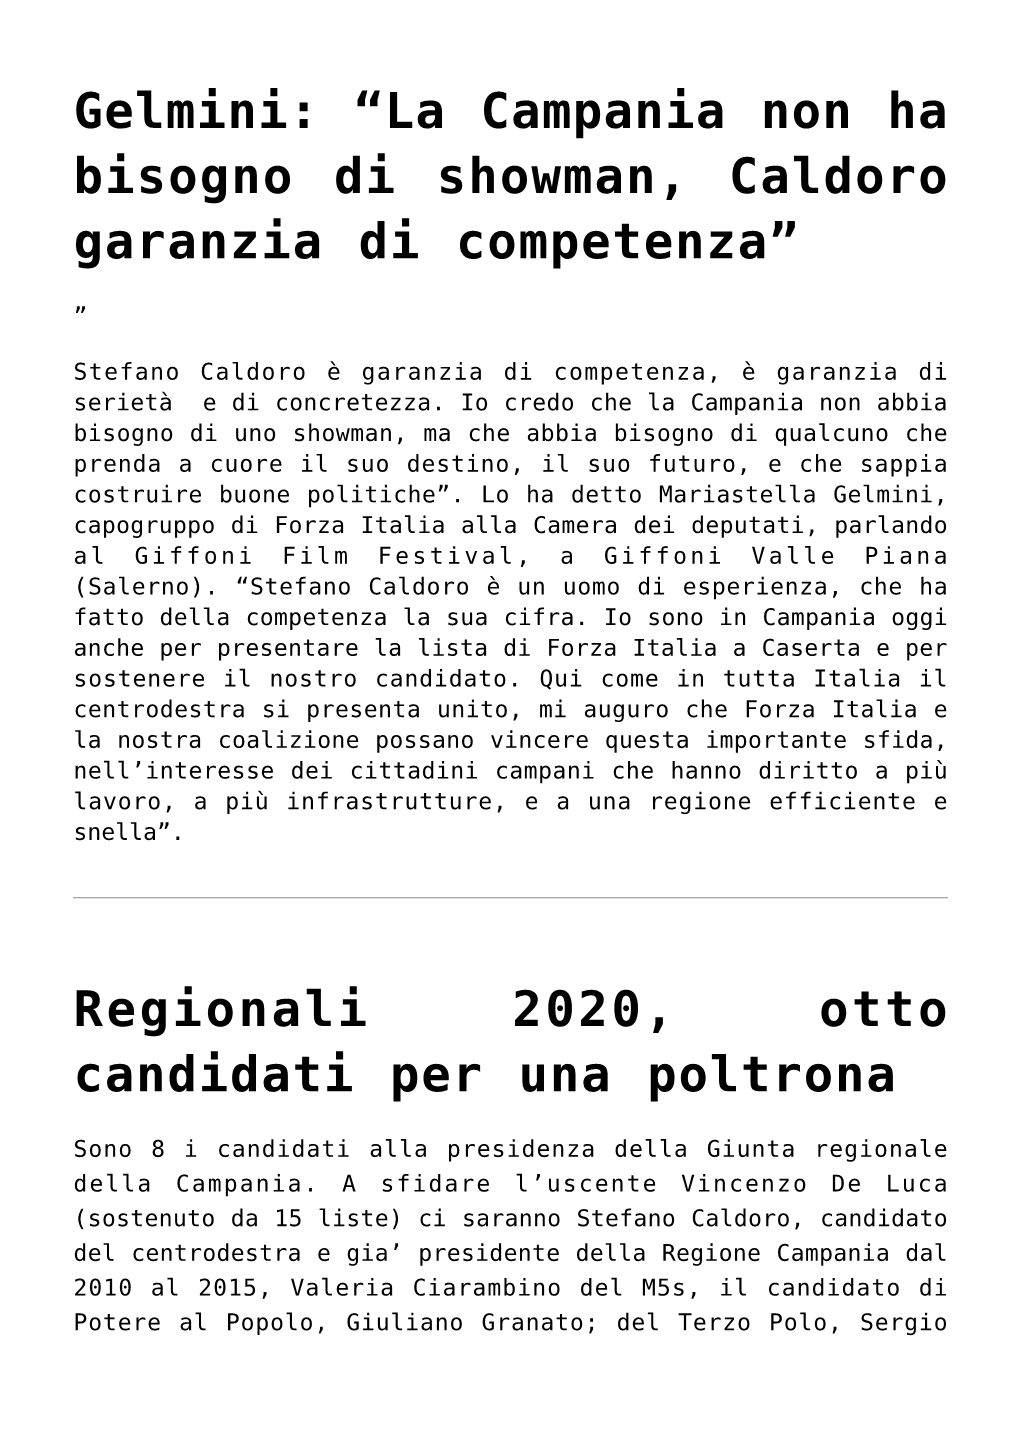 La Campania Non Ha Bisogno Di Showman, Caldoro Garanzia Di Competenza”